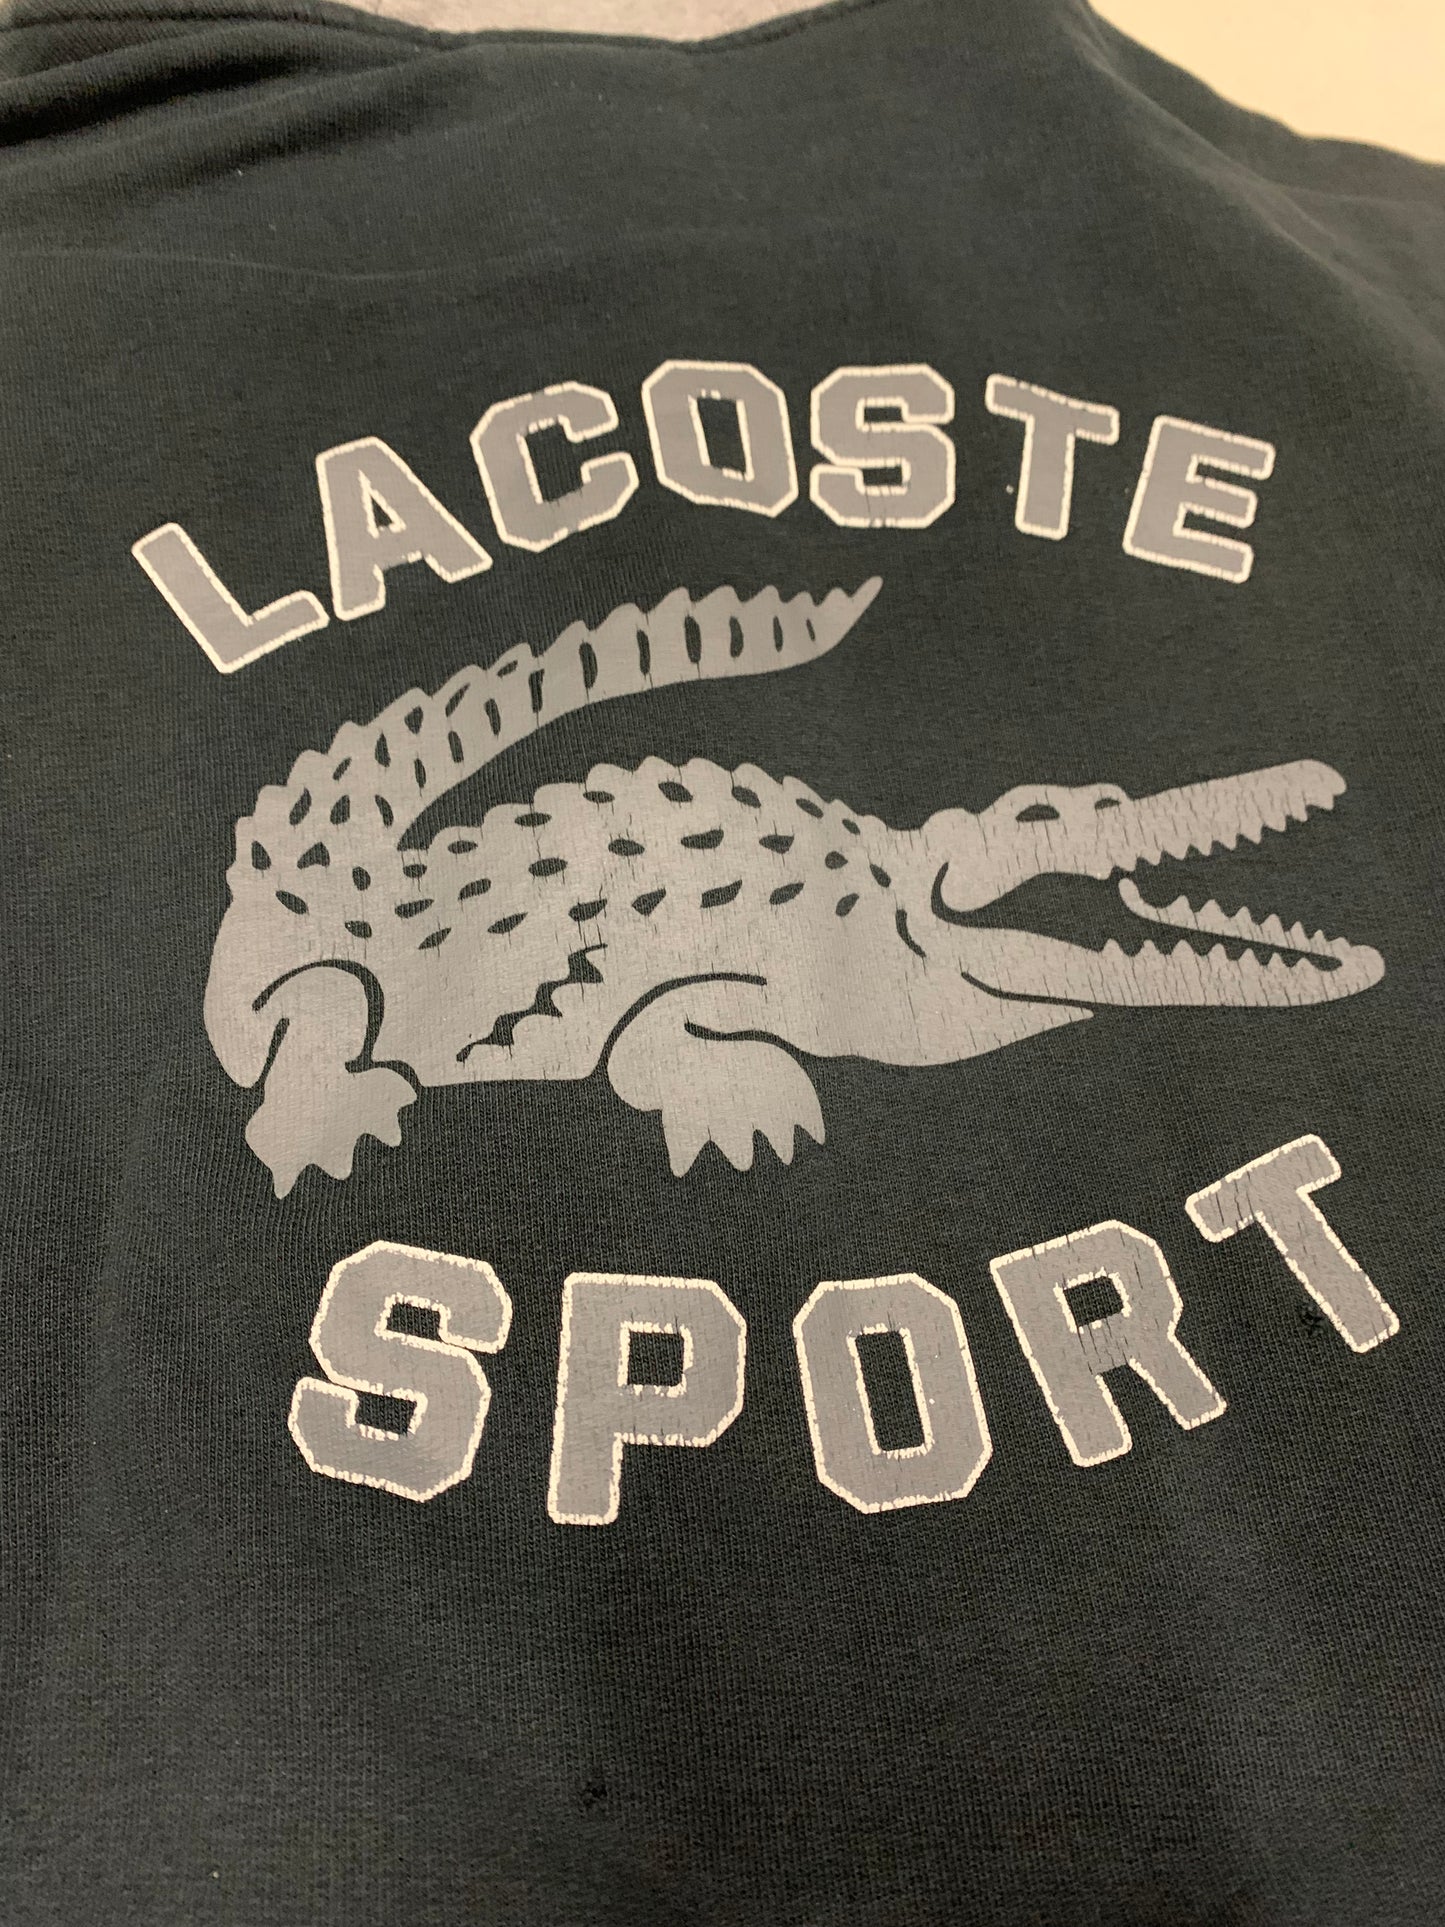 Chaqueta Vintage Lacoste Sport 00’s - S